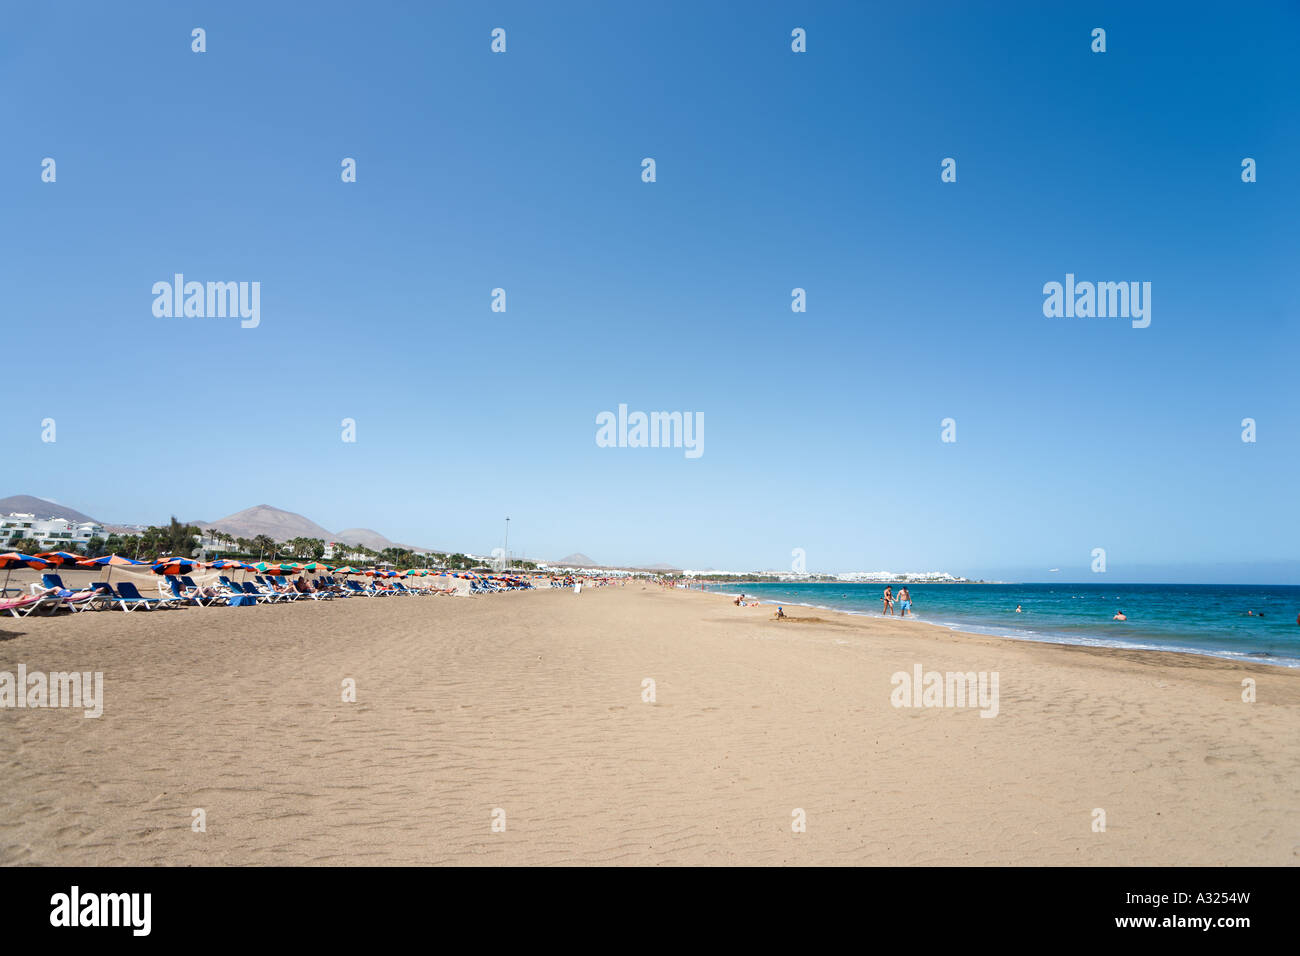 Playa de los Pocillos, Puerto del Carmen, Lanzarote, îles Canaries, Espagne Banque D'Images